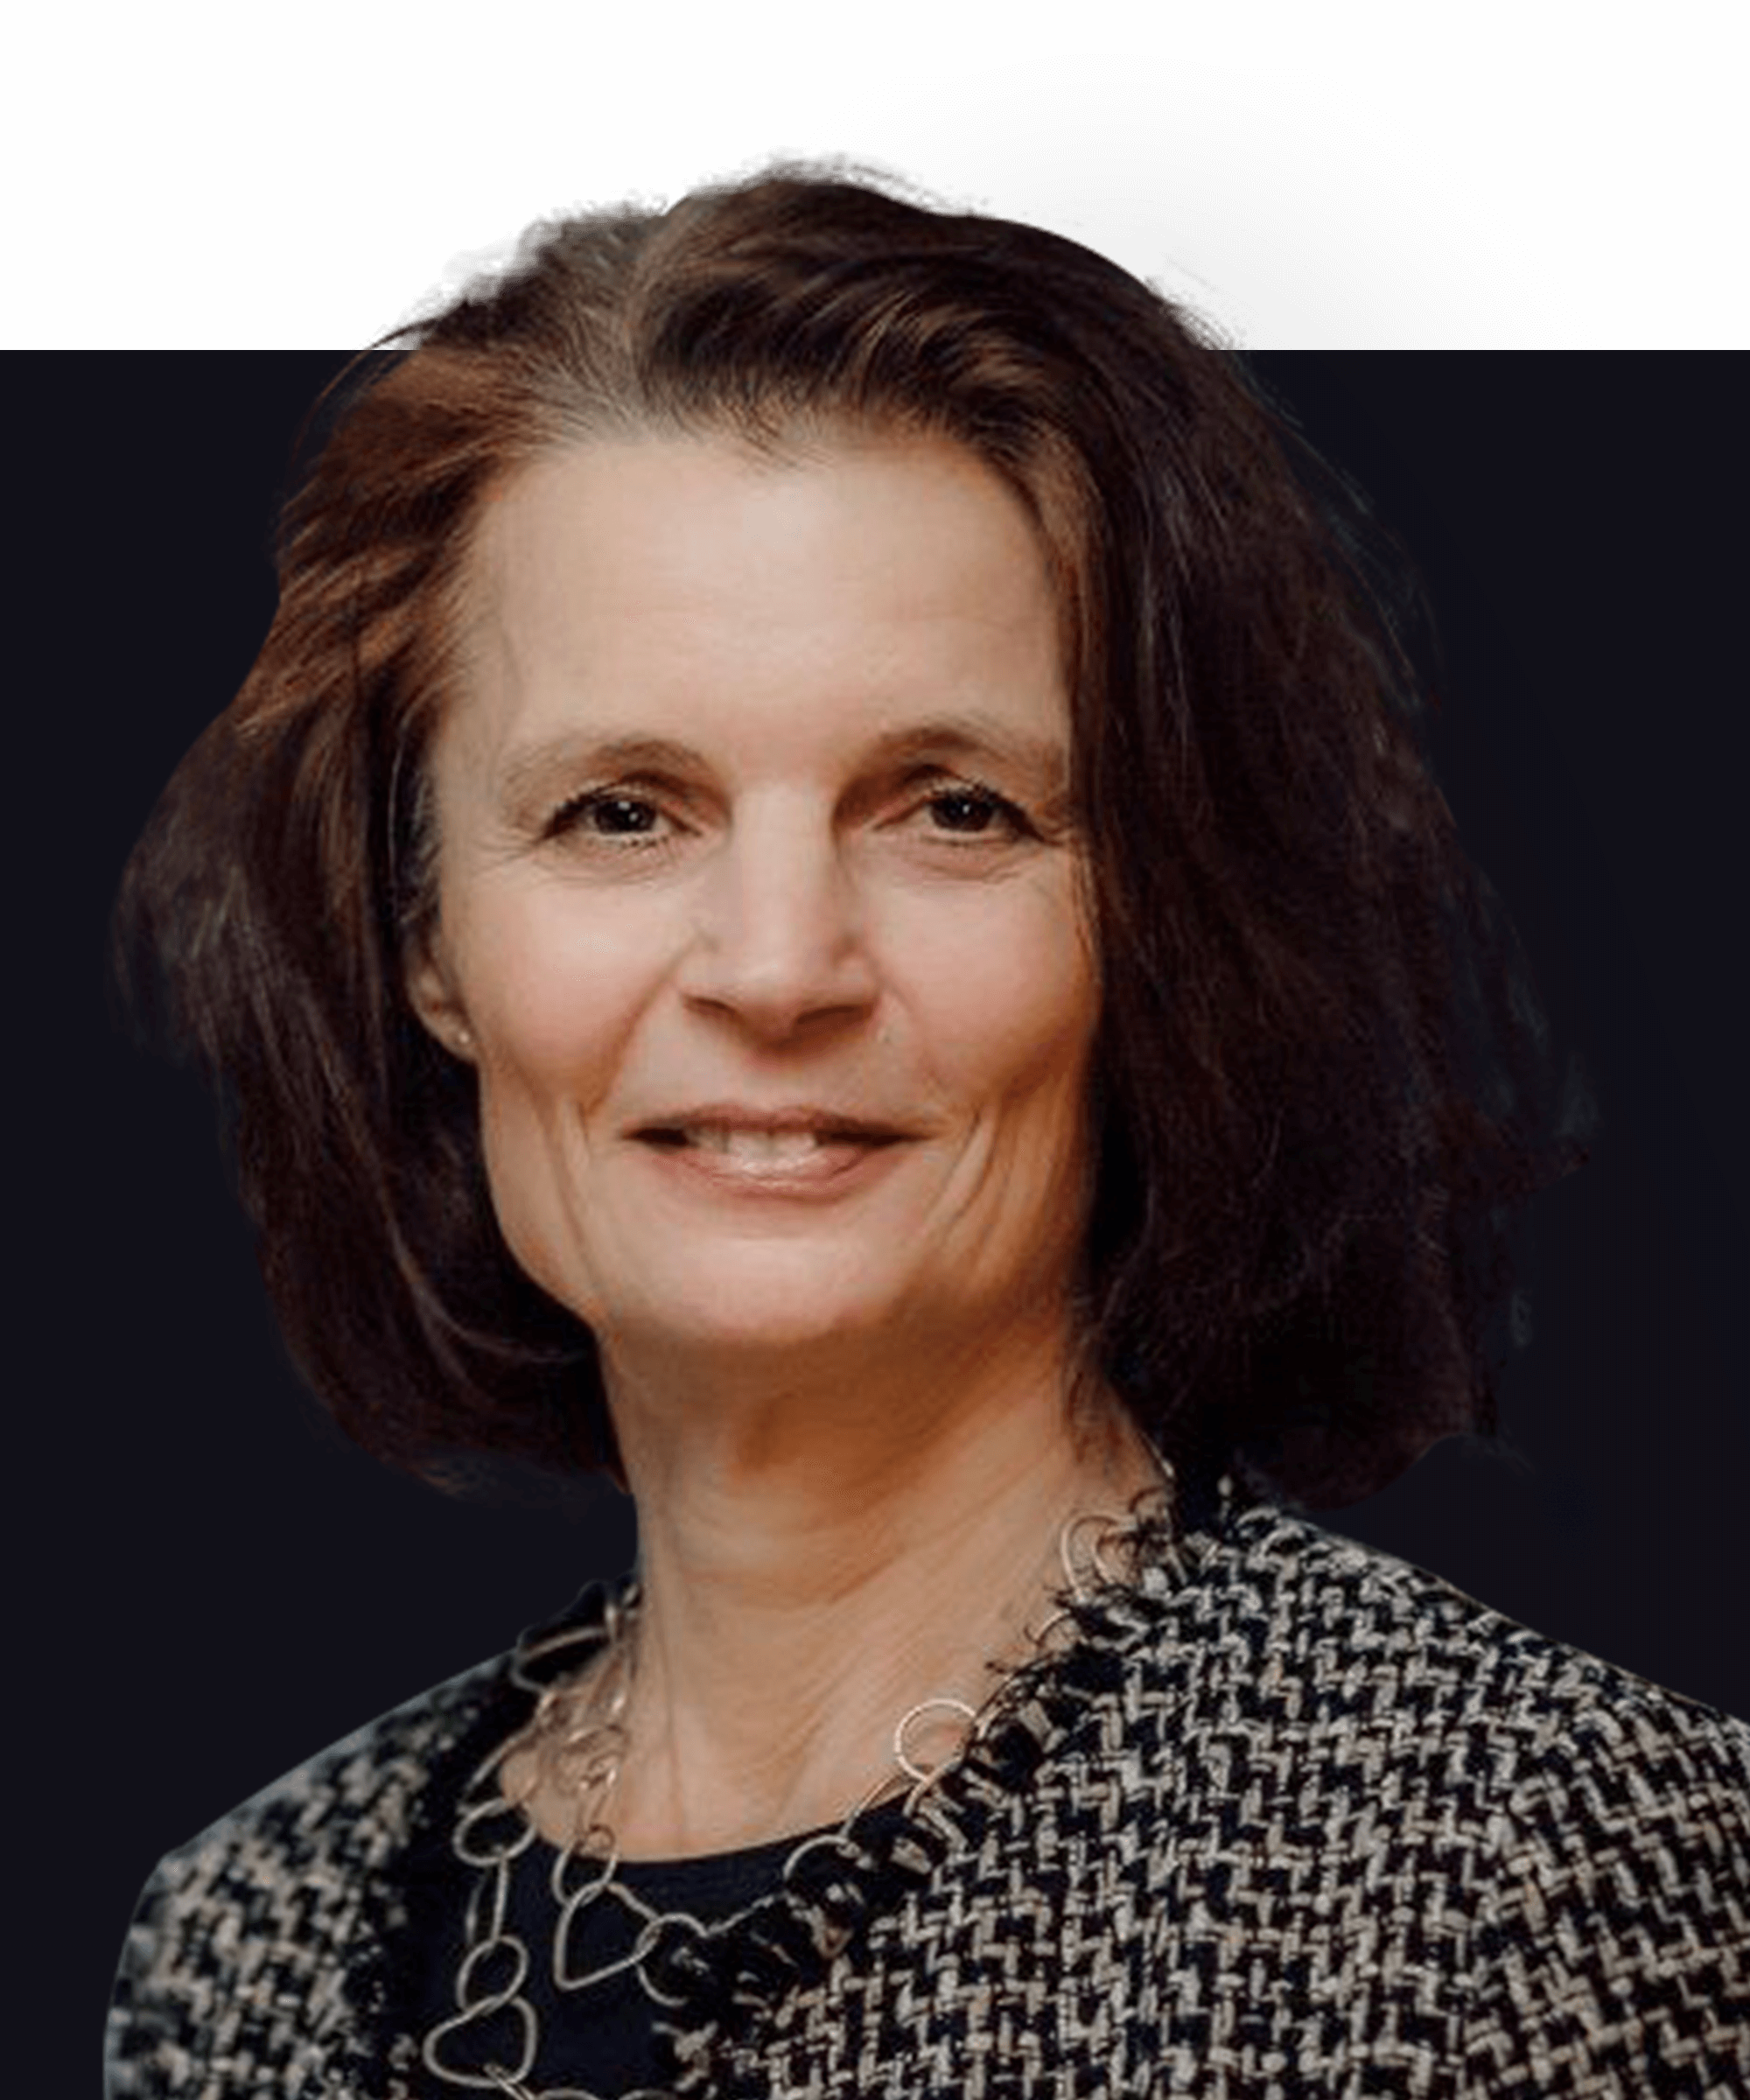 Kopfbild der deutschen Geschäftsführerin Rosmarie Dammler. Sie ist eine kaukasische Frau mit kurzen braunen Haaren und dunklen Augen. Sie trägt ein elegantes Jackett und lächelt in die Kamera.